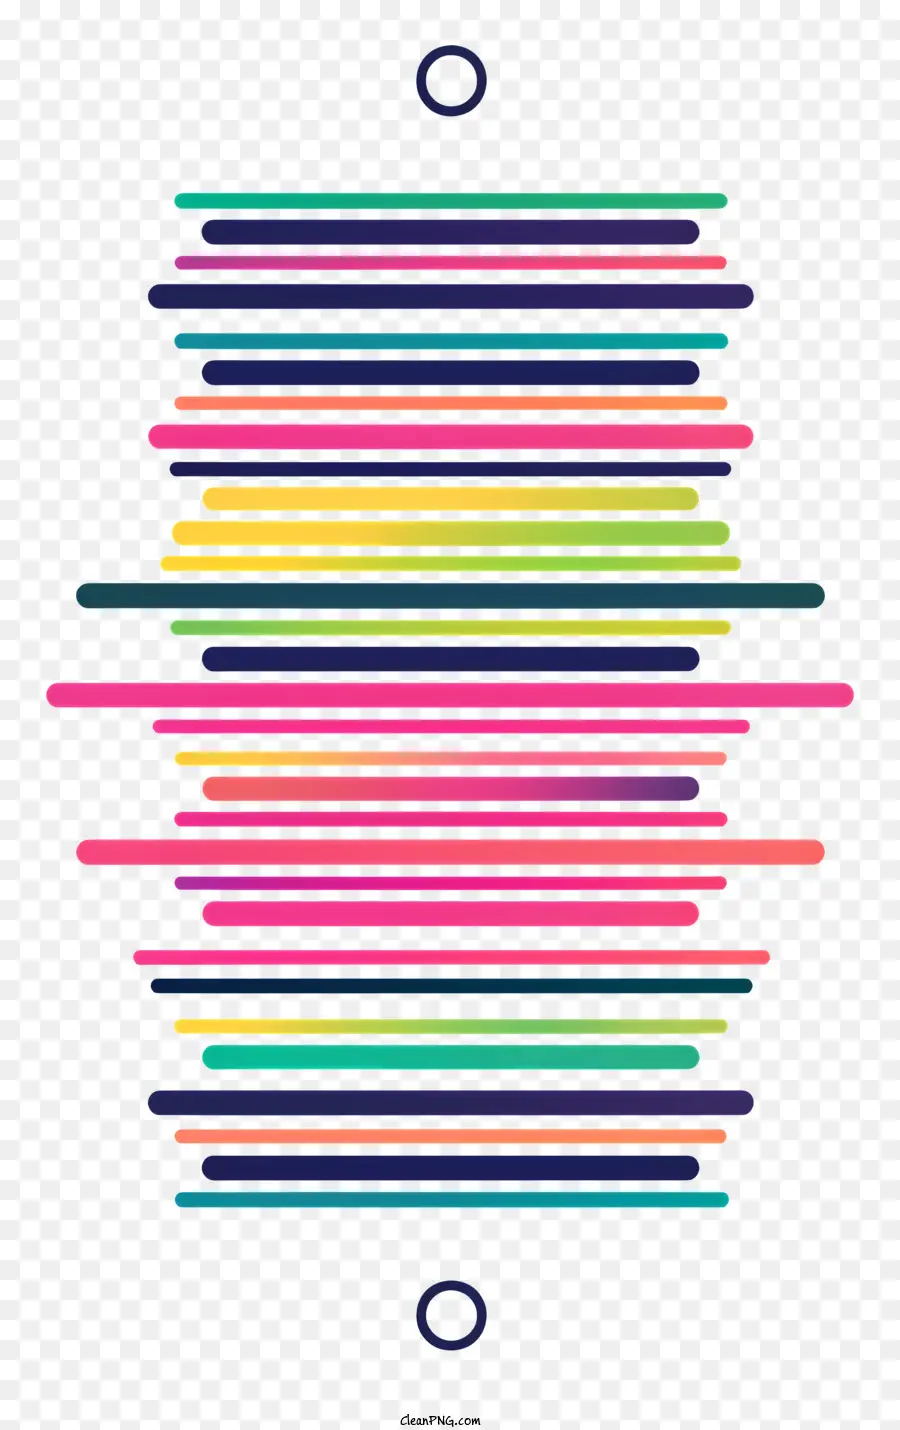 Einfache Trennlinie Kreisform Kegel mehrfarbige Streifen - Streifenkegel mit ordentlicher mehrfarbiger kreisförmiger Muster